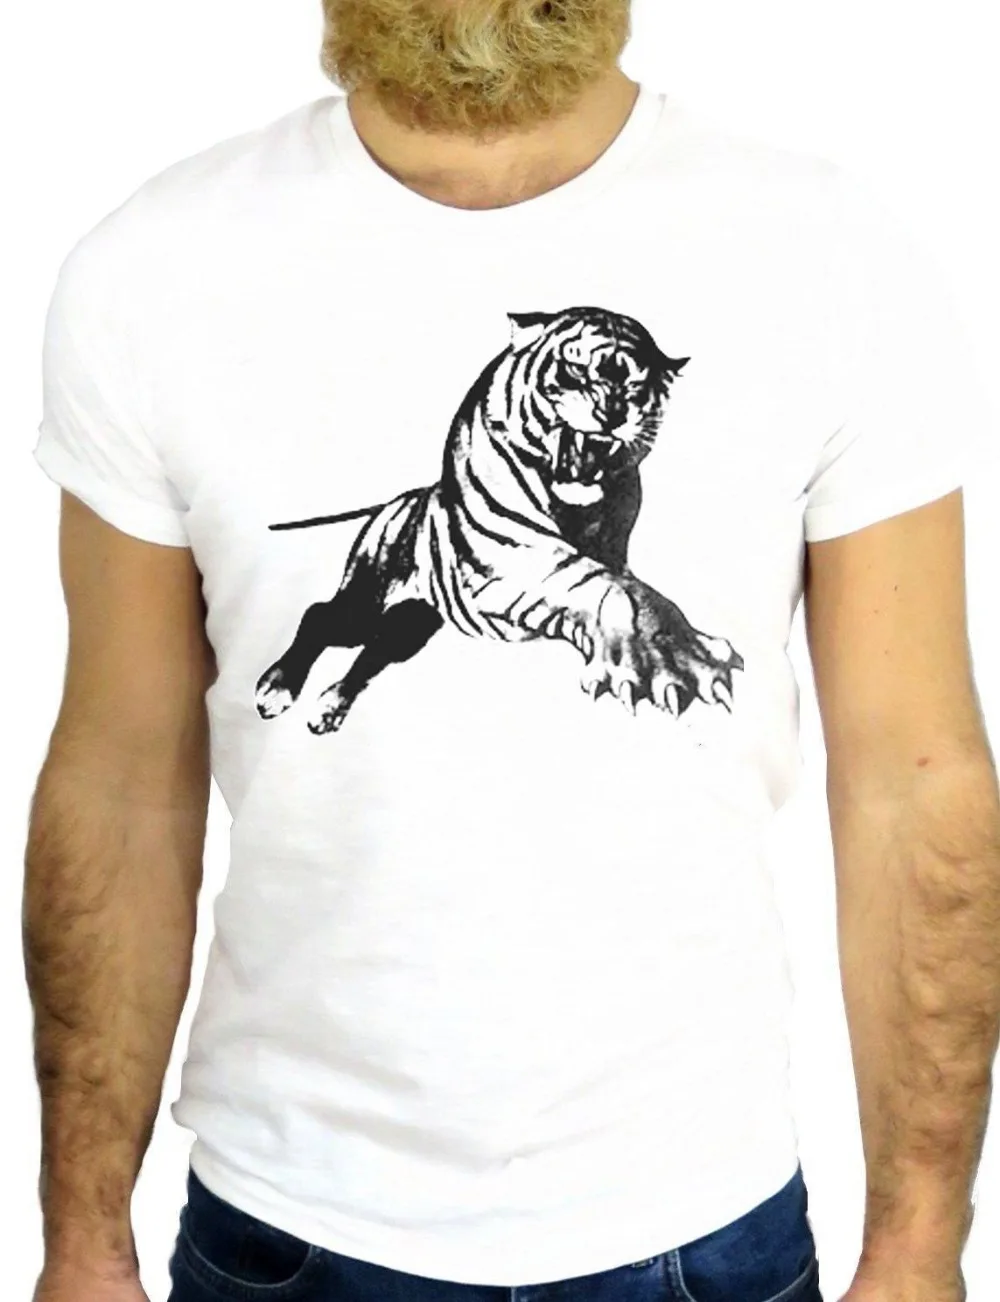 Футболки Лето 2019 г. Новый стиль для мужчин Высокое качество футболки Тигр малеся Прохладный Felin Тигре Gattone татуировки Viintage футболка